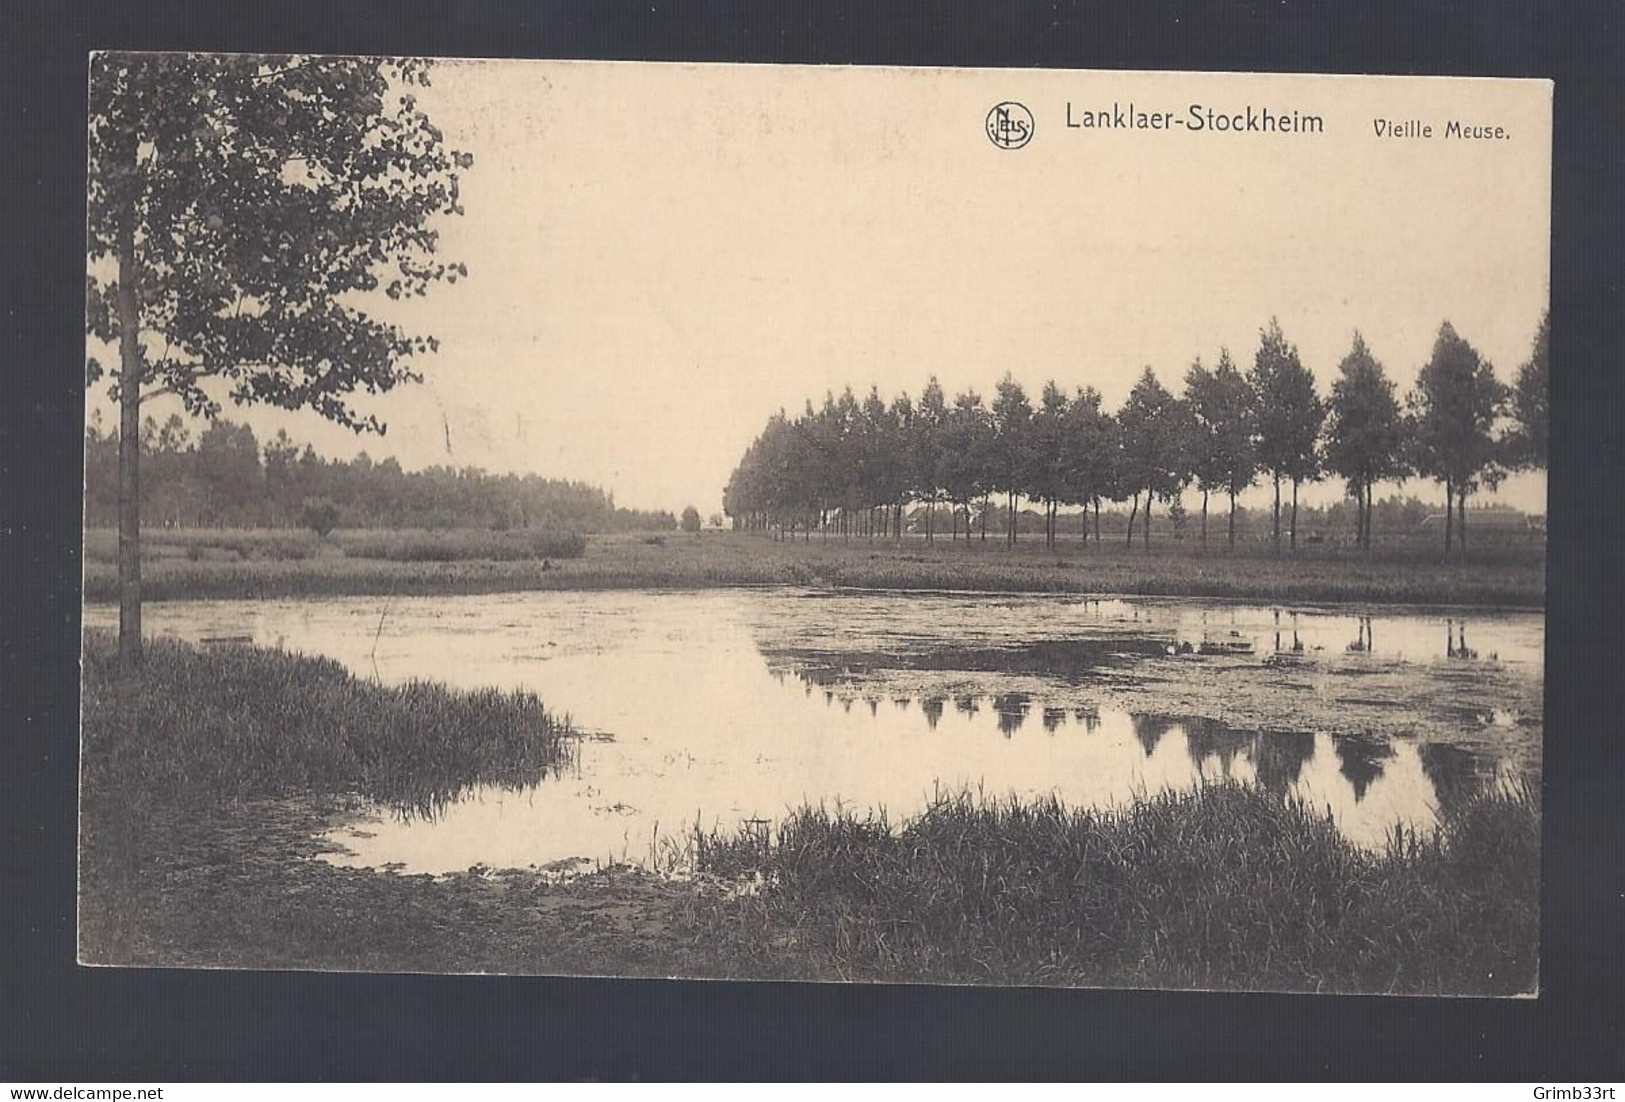 Lanklaer-Stockheim - Vieille Meuse - Postkaart - Dilsen-Stokkem